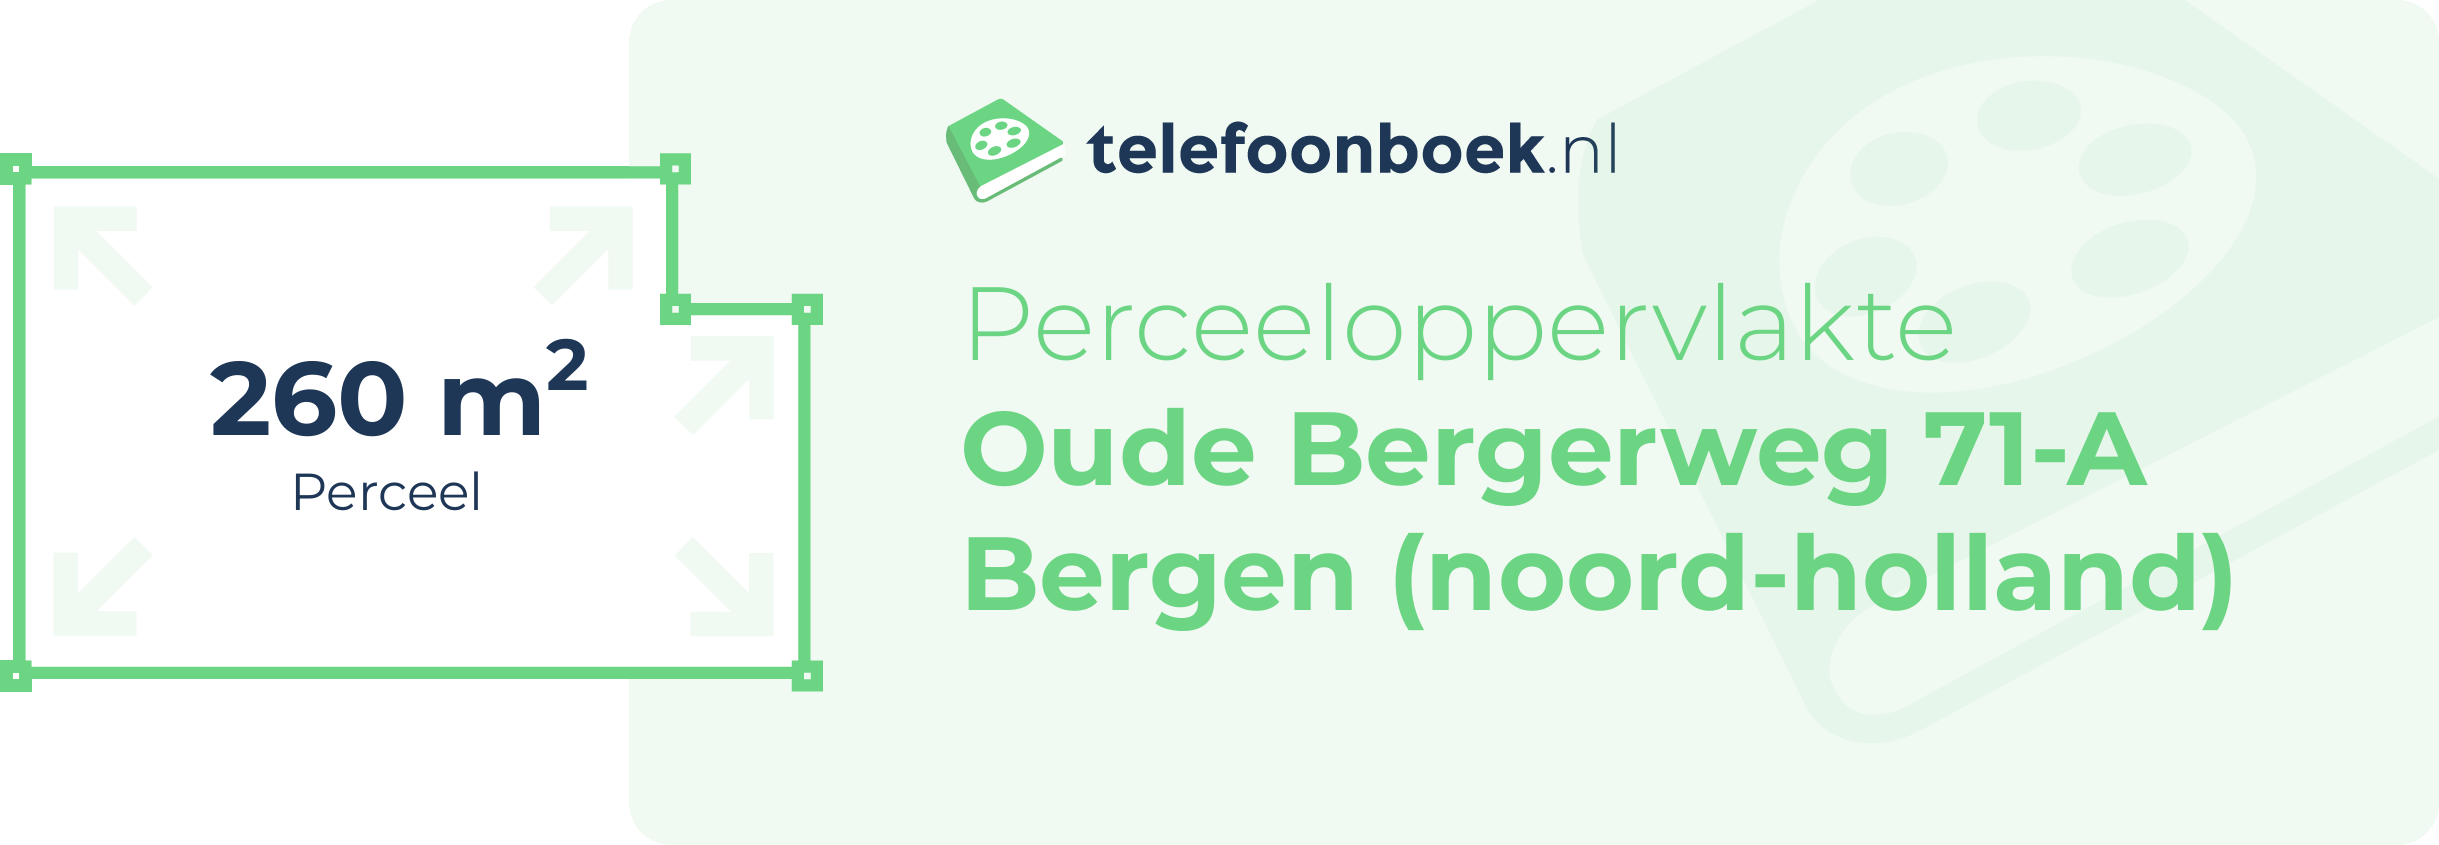 Perceeloppervlakte Oude Bergerweg 71-A Bergen (Noord-Holland)